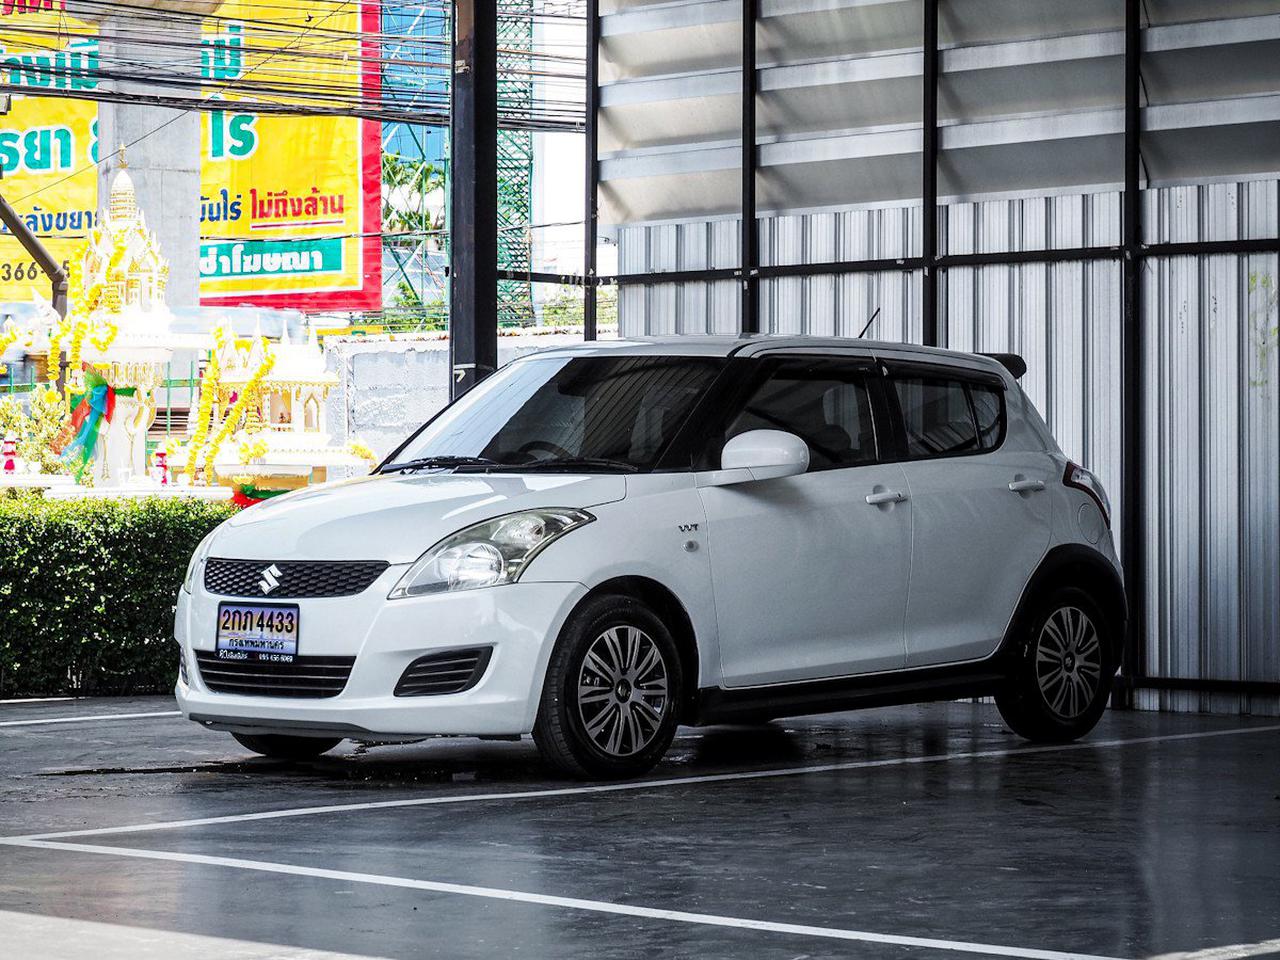 Suzuki Swiff 1.2 GL เกียร์ออโต้ ปี 2014 รูปเล็กที่ 3